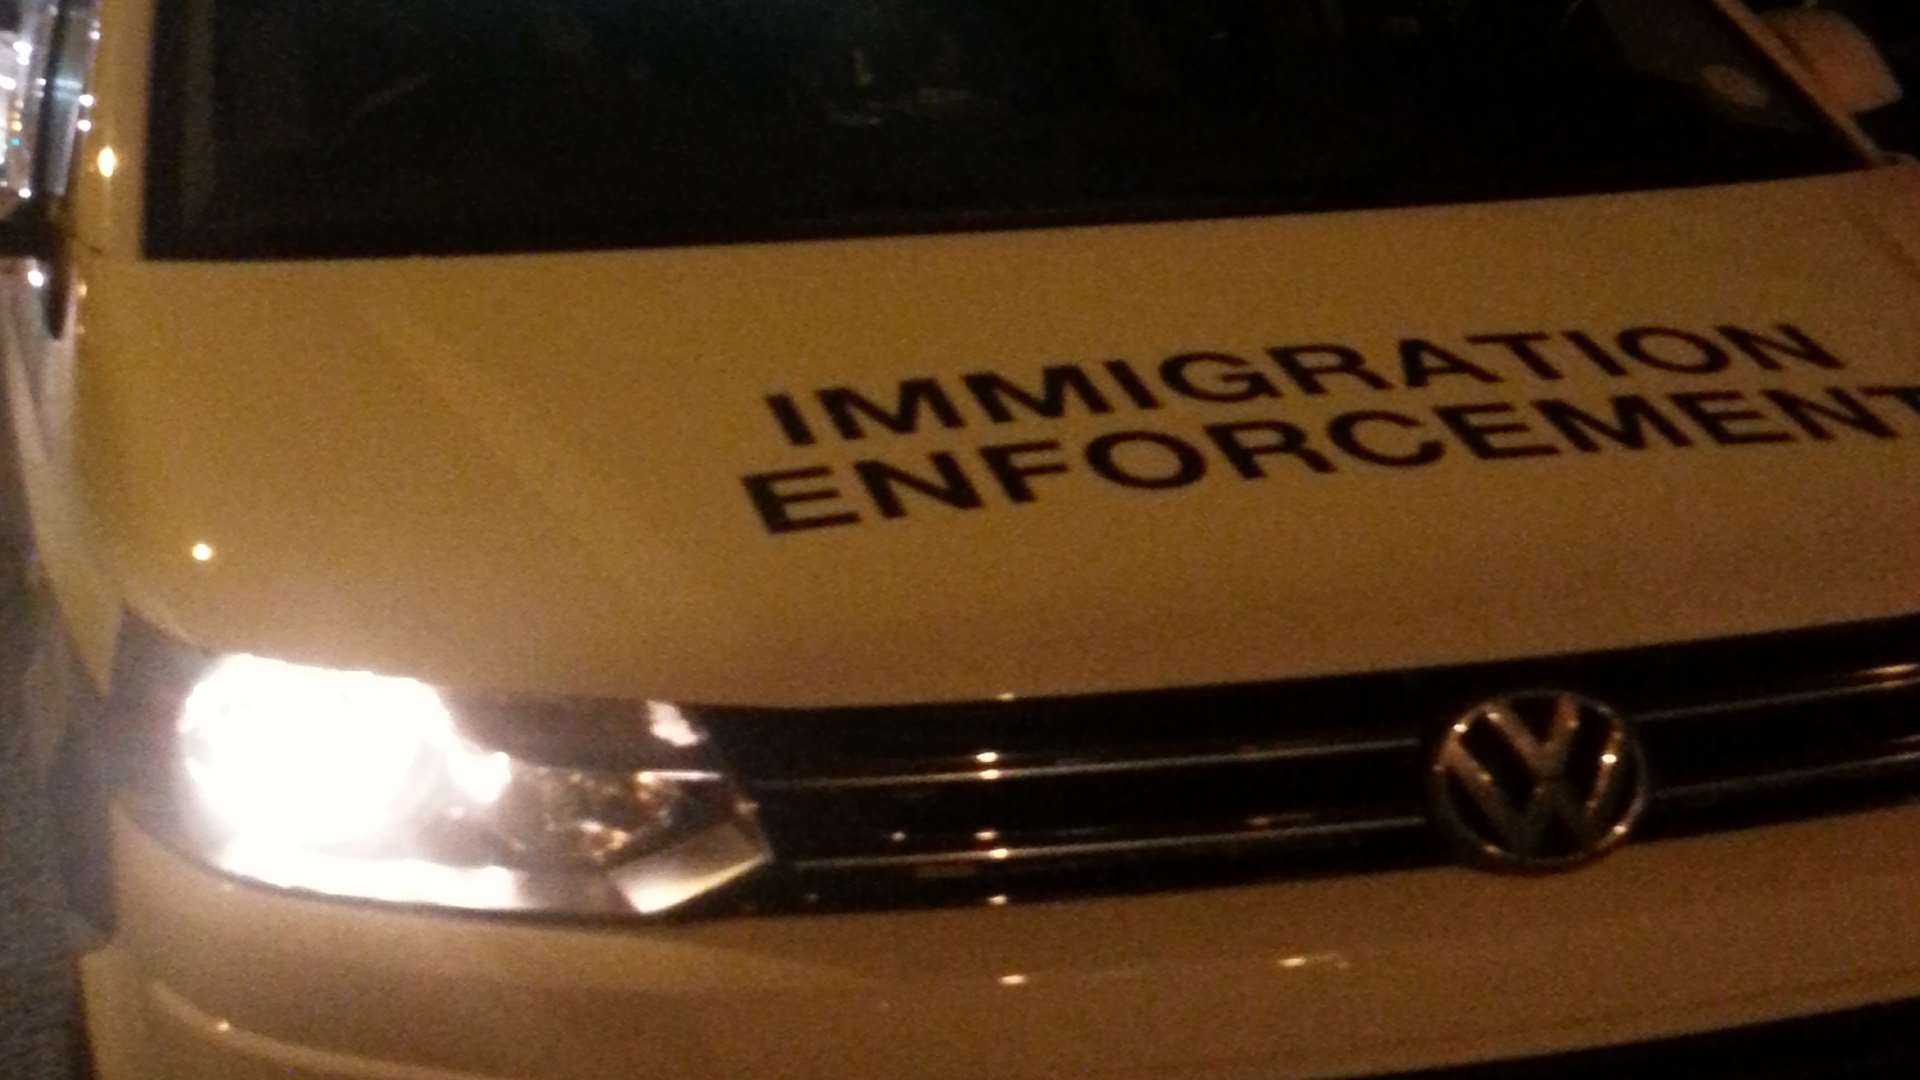 Immigration officers arrested five men